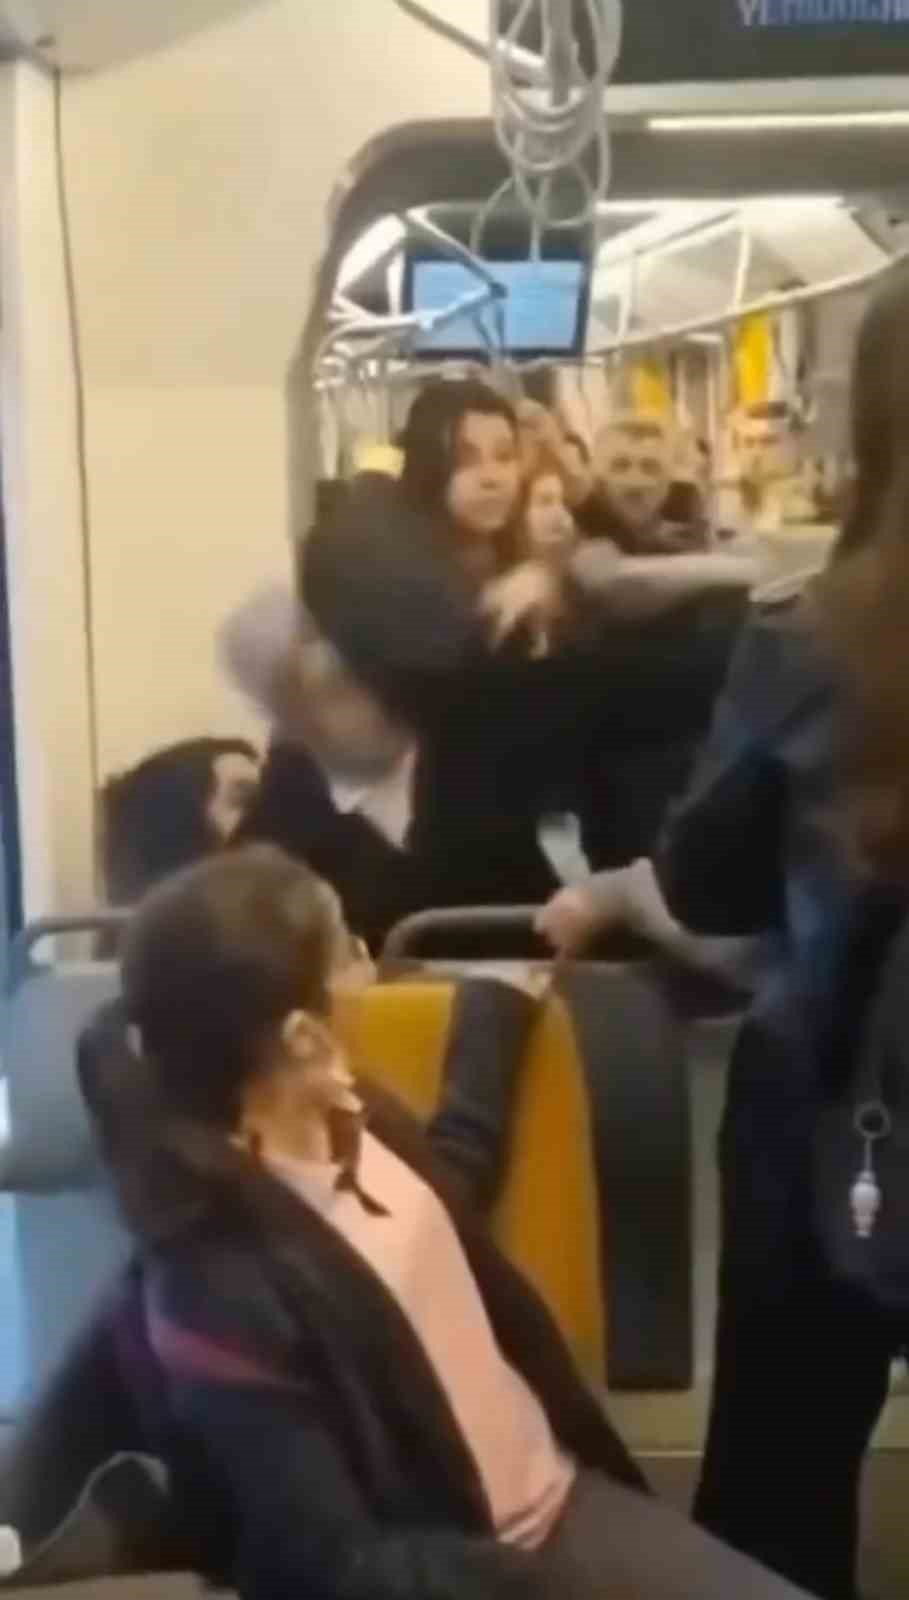 tramvayda kız öğrenciler saç saça baş başa kavga etti